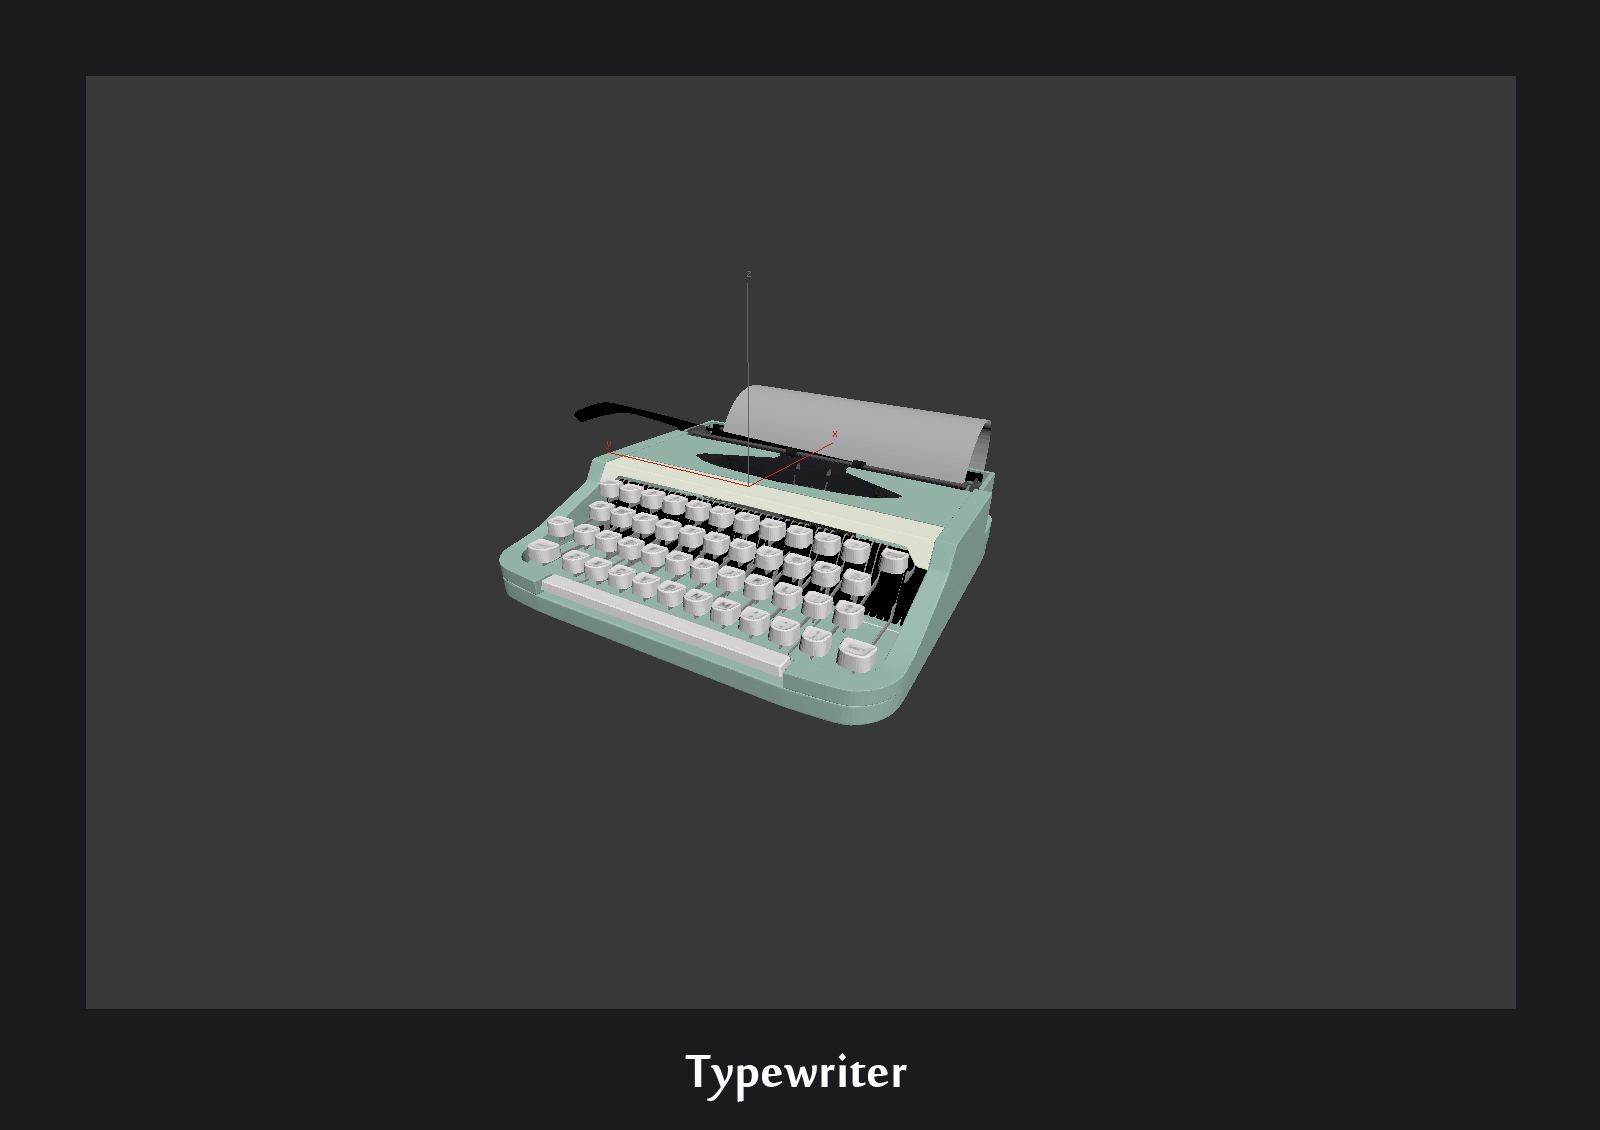 022_Typewriter_evermotion_058.jpg